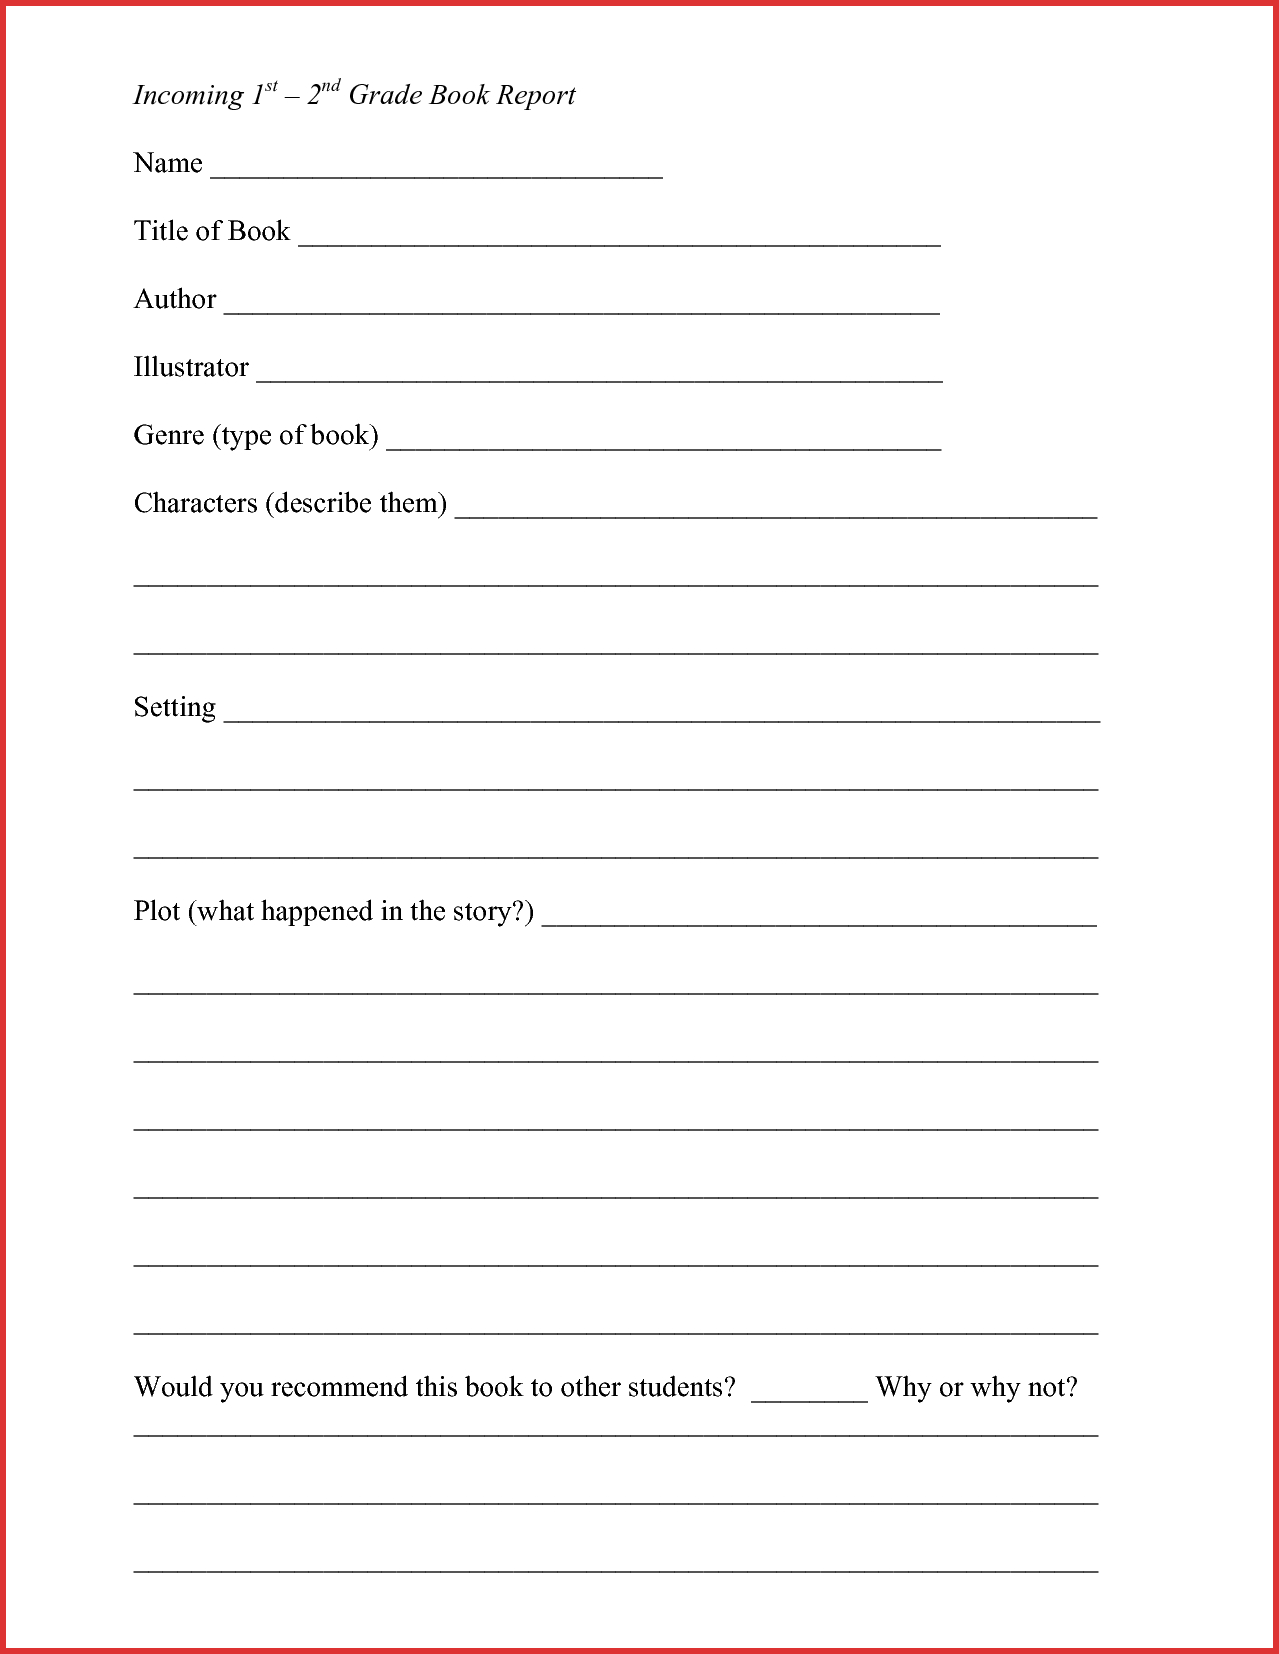 Lovely 2Nd Grade Book Report Template | Job Latter Intended For 2Nd Grade Book Report Template